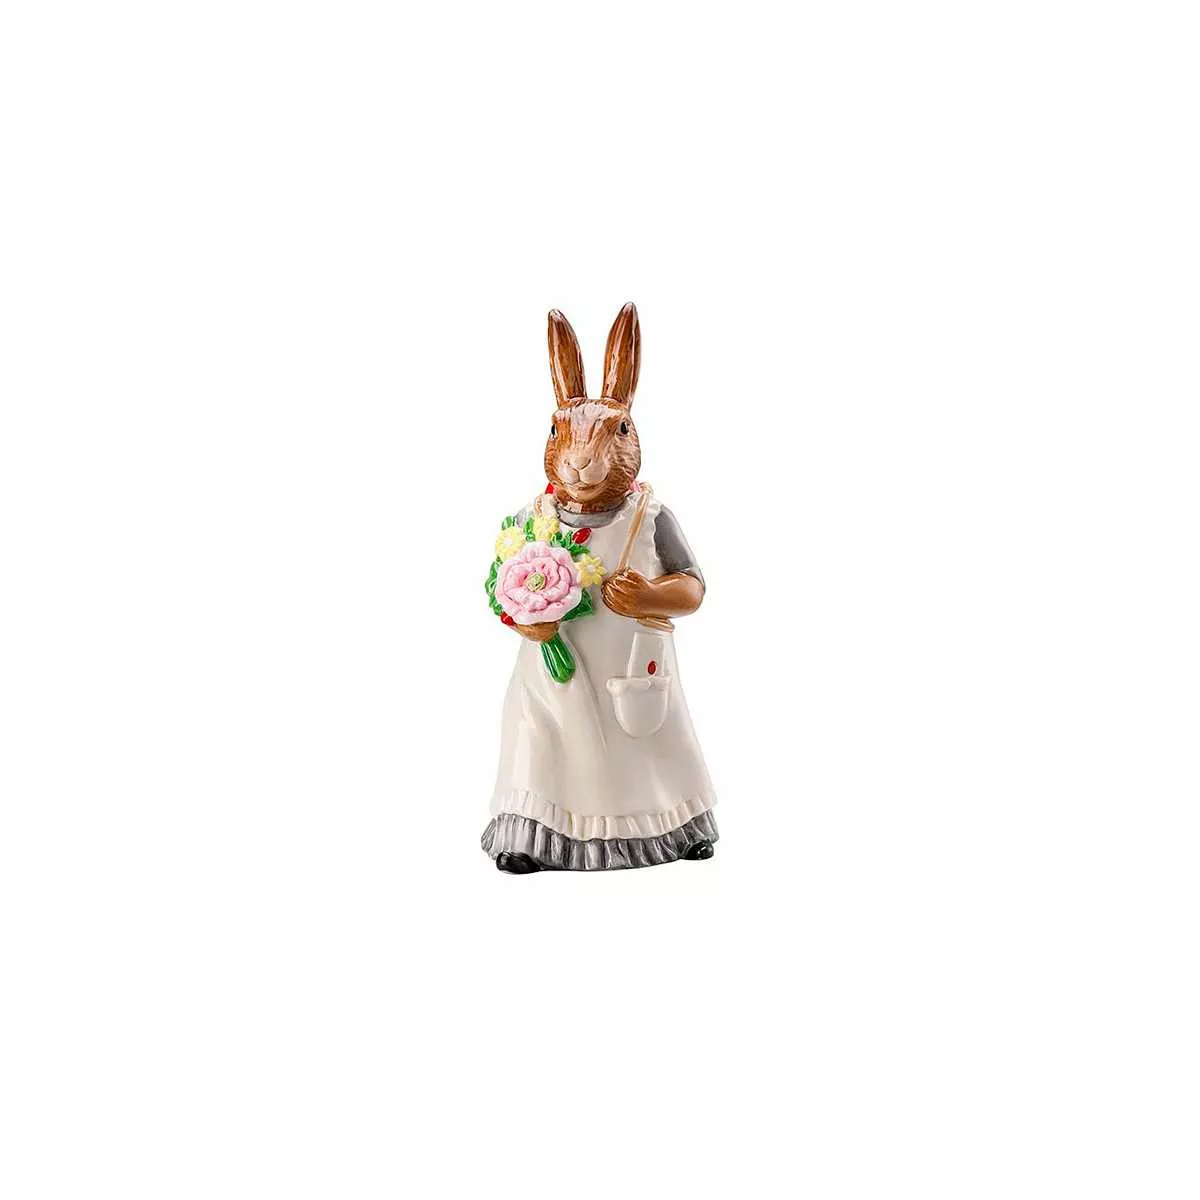 Статуэтка пасхальная «Леди кролик с корзиной» Hutschenreuther Hasenfiguren Dekoriert, высота 13,5 см (02350-726022-88840) - Фото nav 3